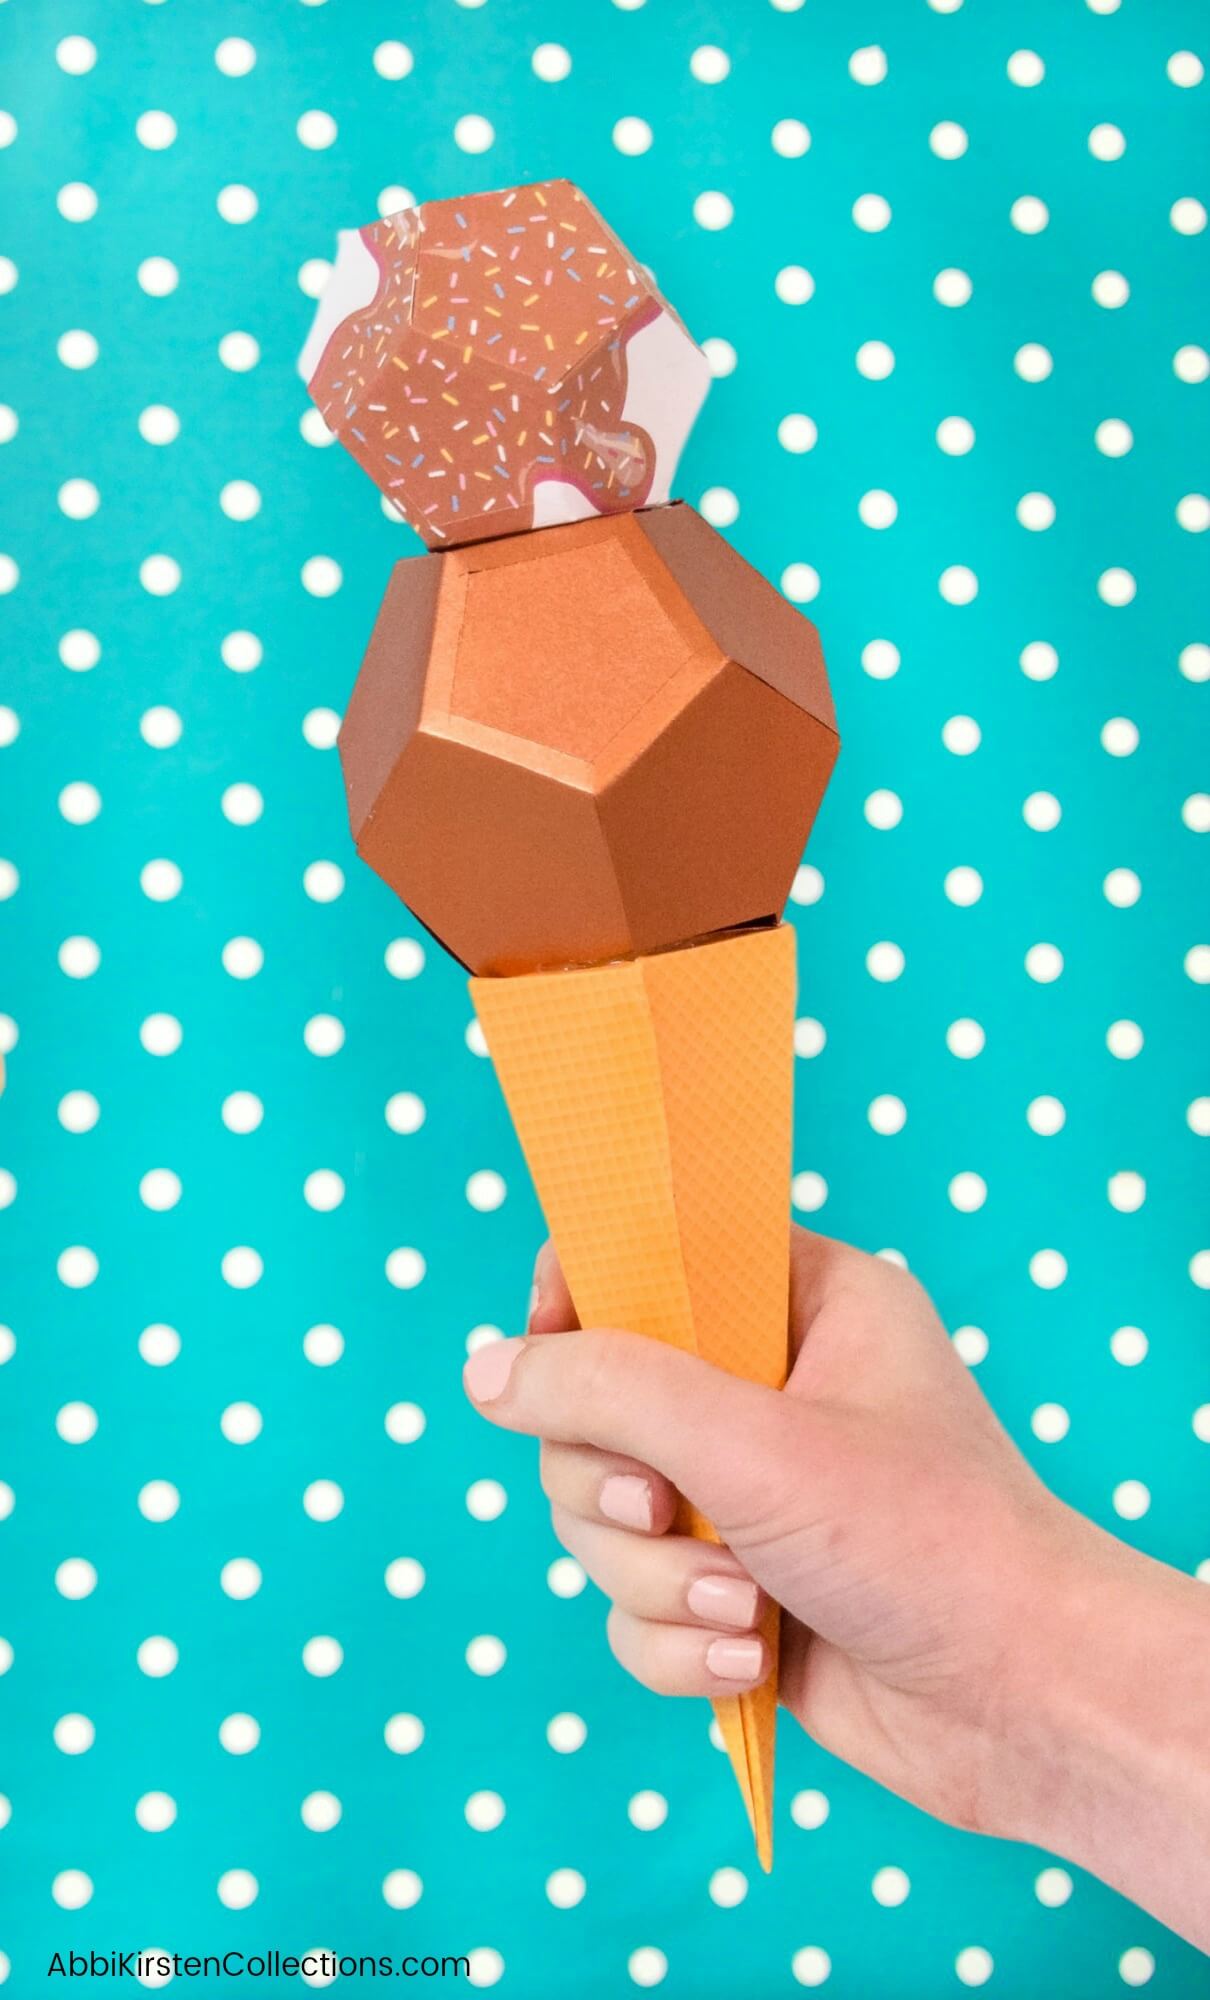 ice-cream-cone-template-ice-cream-cone-craft-ice-cream-crafts-ice